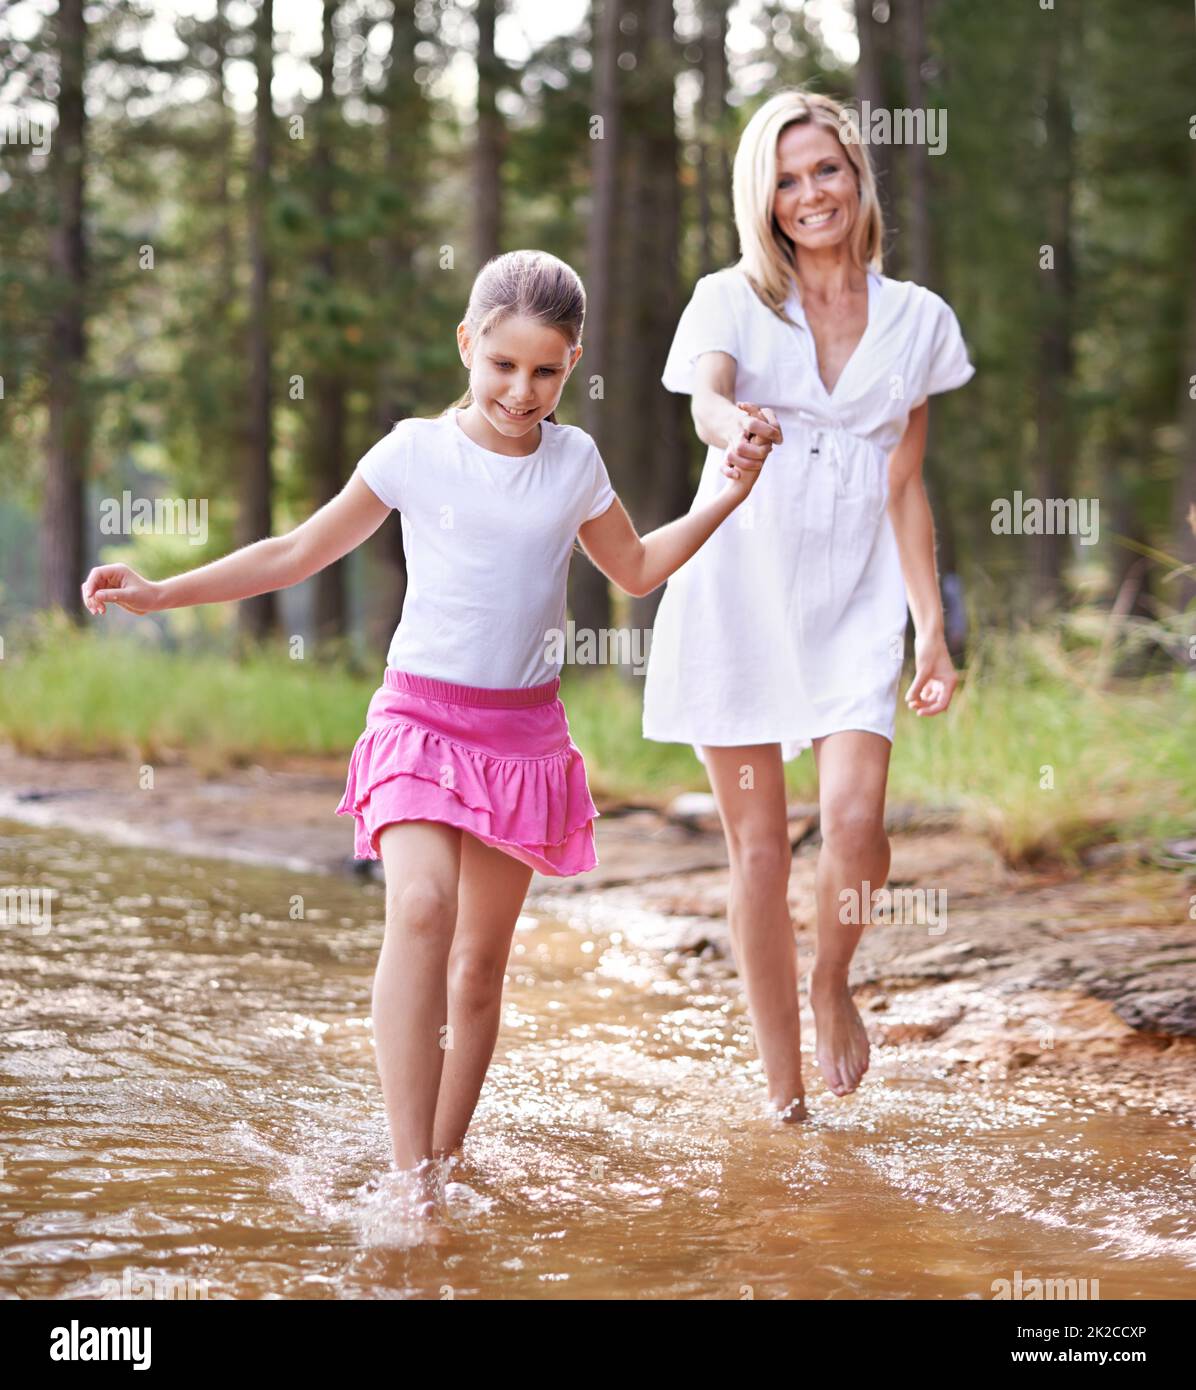 Allons-y de cette façon maman. Une petite fille mignonne qui court dans un ruisseau sauvage avec sa mère. Banque D'Images